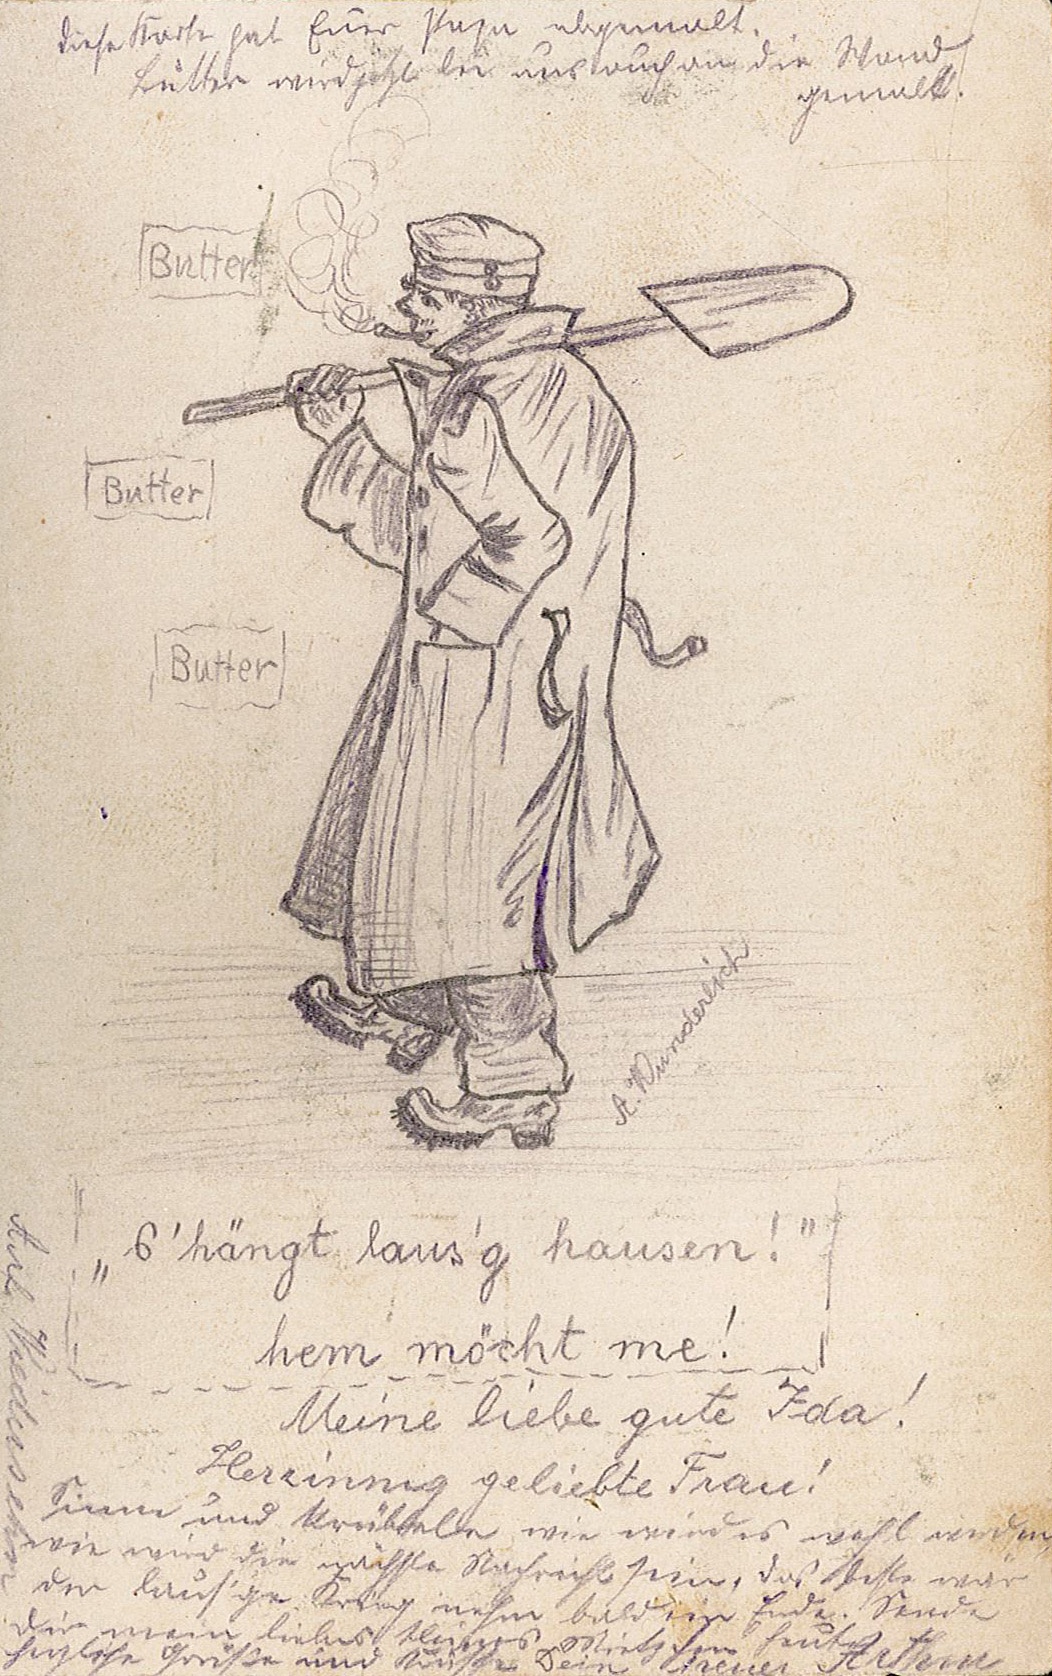 Feldpostkarte von Arthur Wunderlich an Ida Wunderlich, "s’hängt lans’g hausen! hem möcht me!", 1914-1918 (Museum Wolmirstedt RR-F)